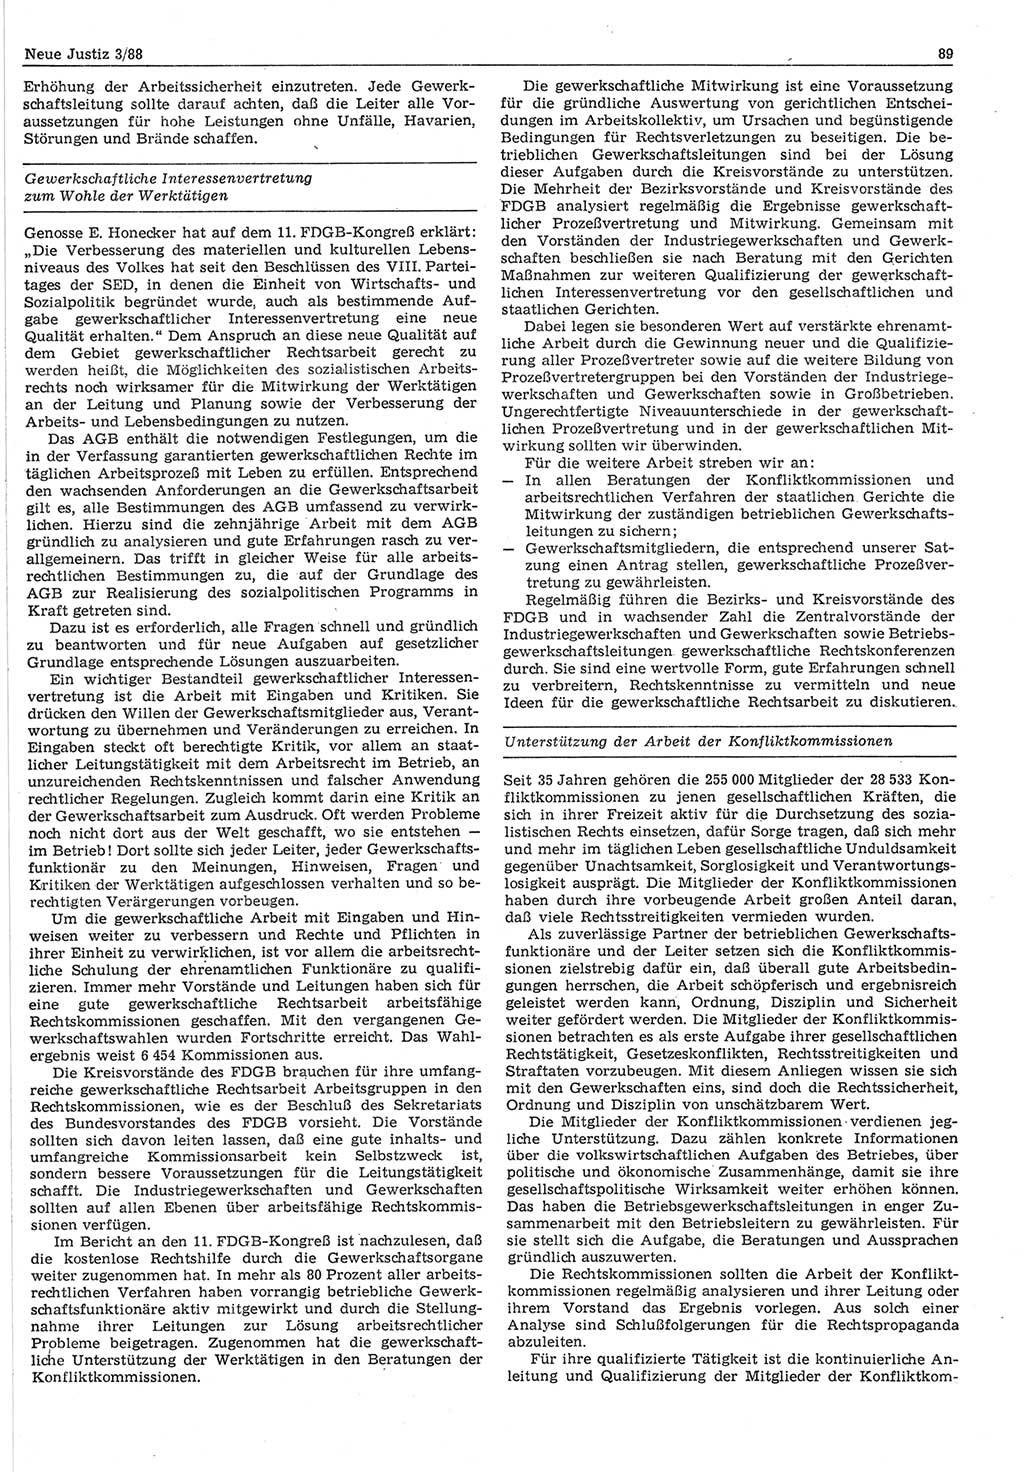 Neue Justiz (NJ), Zeitschrift für sozialistisches Recht und Gesetzlichkeit [Deutsche Demokratische Republik (DDR)], 42. Jahrgang 1988, Seite 89 (NJ DDR 1988, S. 89)